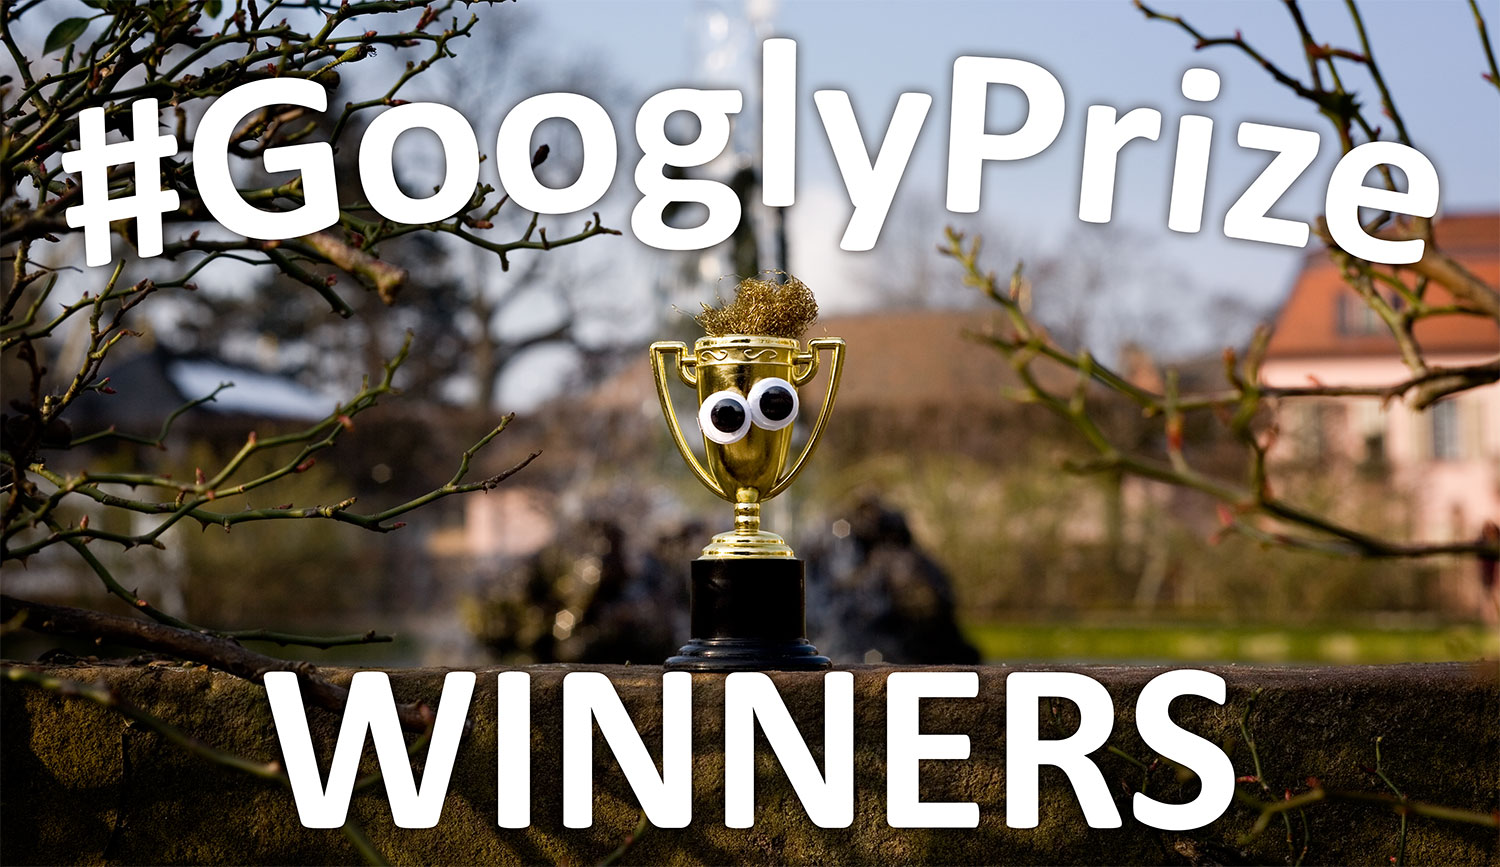 GooglyPrize Winners 31